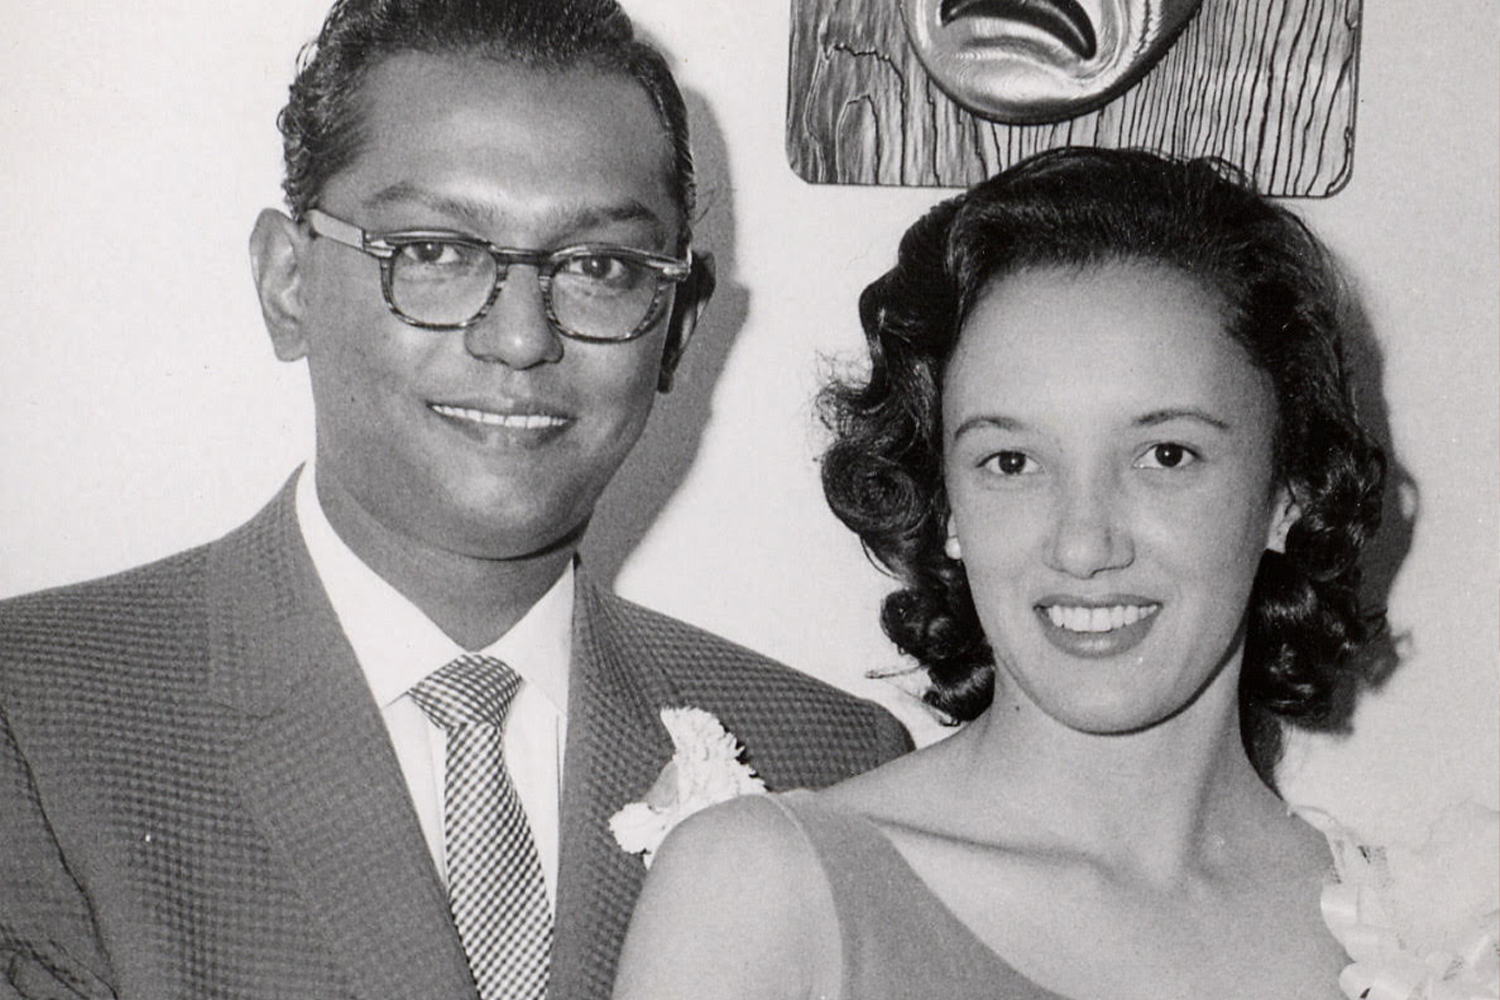 Ben and Virginia in 1958